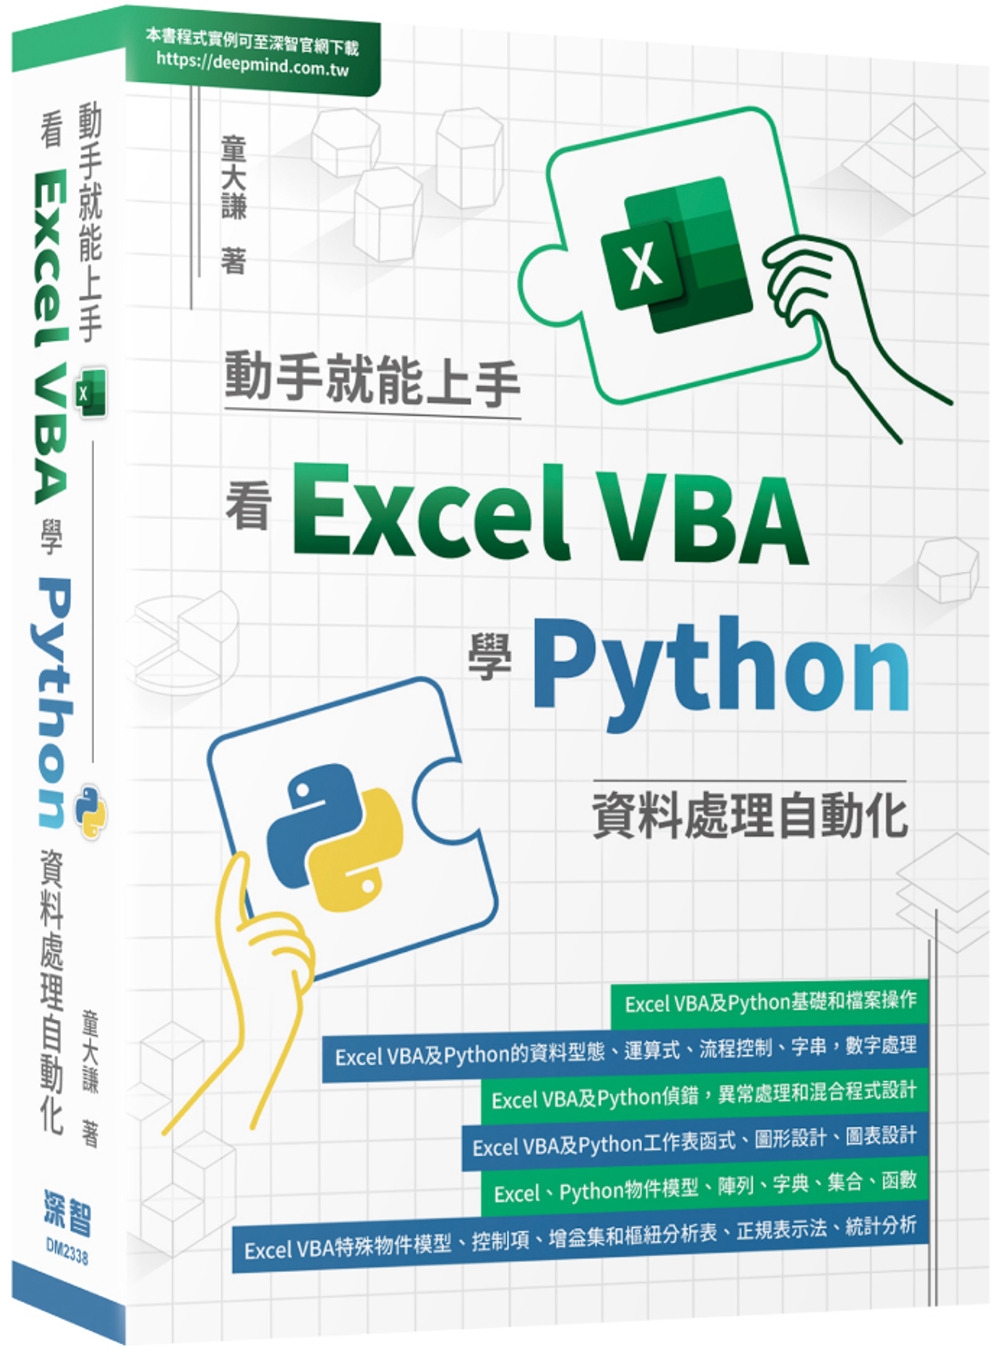 動手就能上手：看Excel VBA學Python資料處理自動...